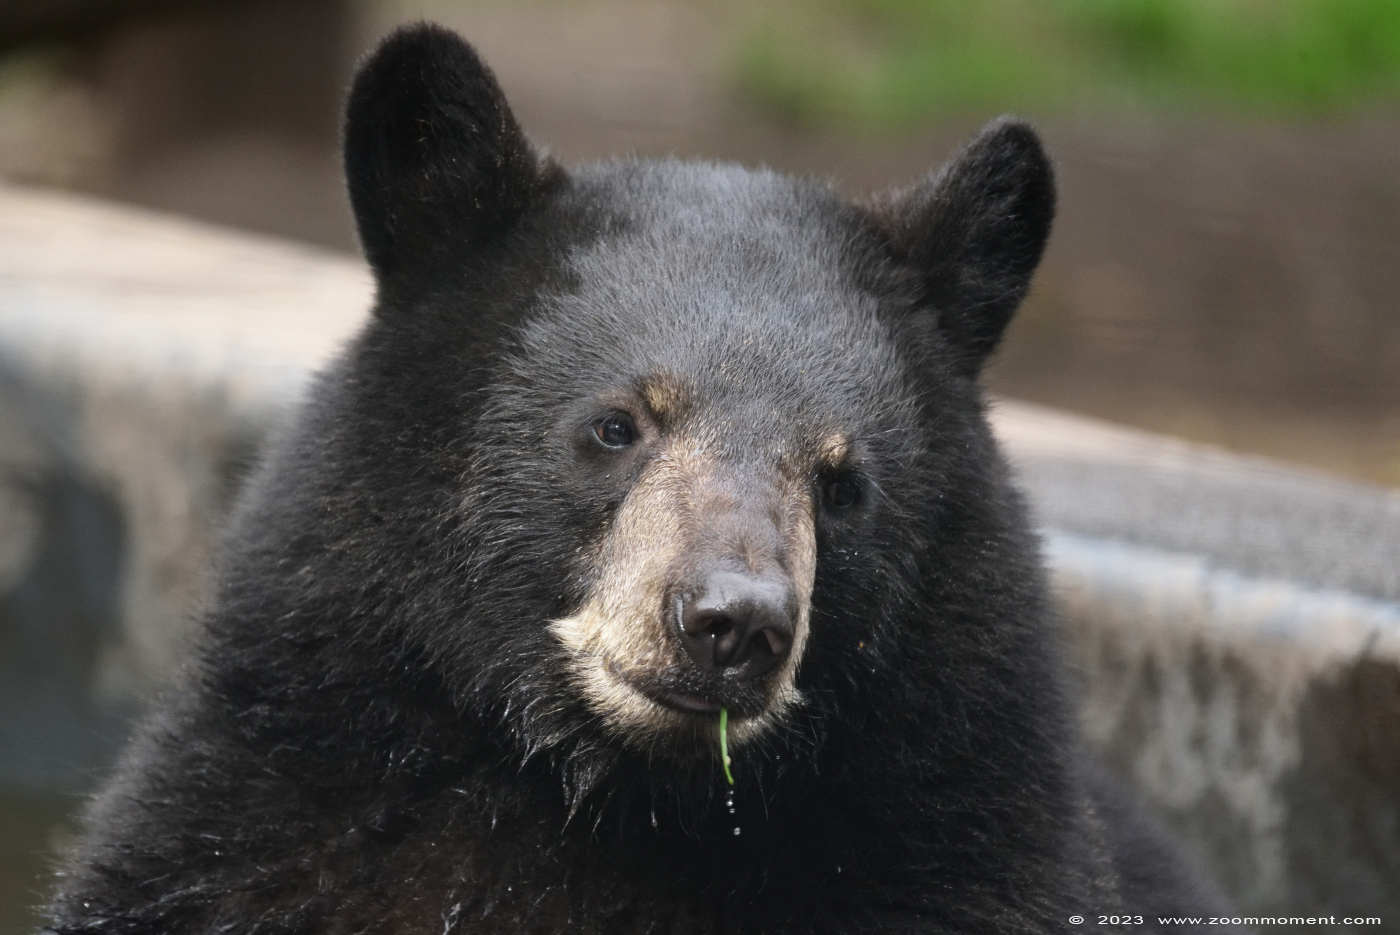 Amerikaanse zwarte beer ( Ursus americanus ) American black bear
Keywords: Ziezoo Volkel Nederland Amerikaanse zwarte beer Ursus americanus American black bear